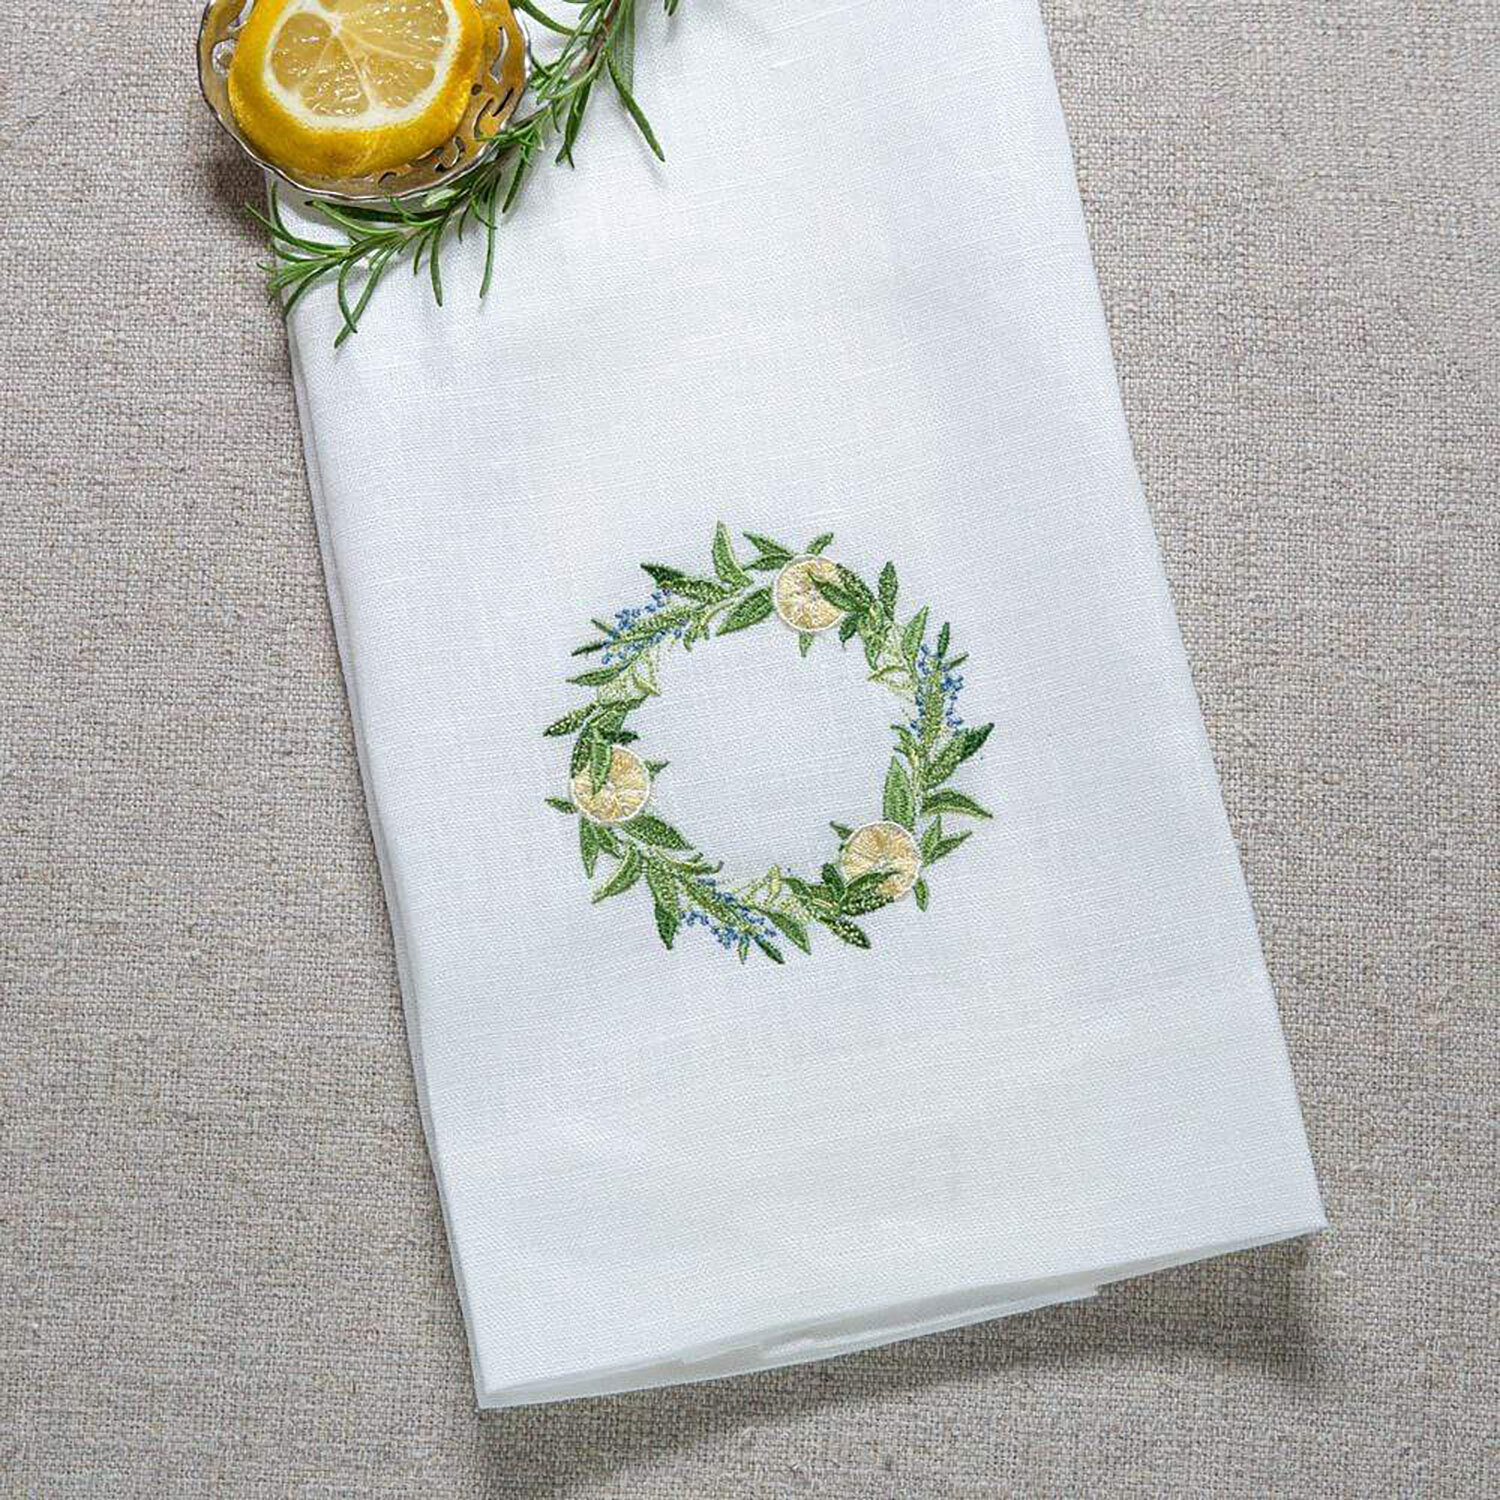 Crown Lemon Wreath Linen Towel White Set of 4 T1016